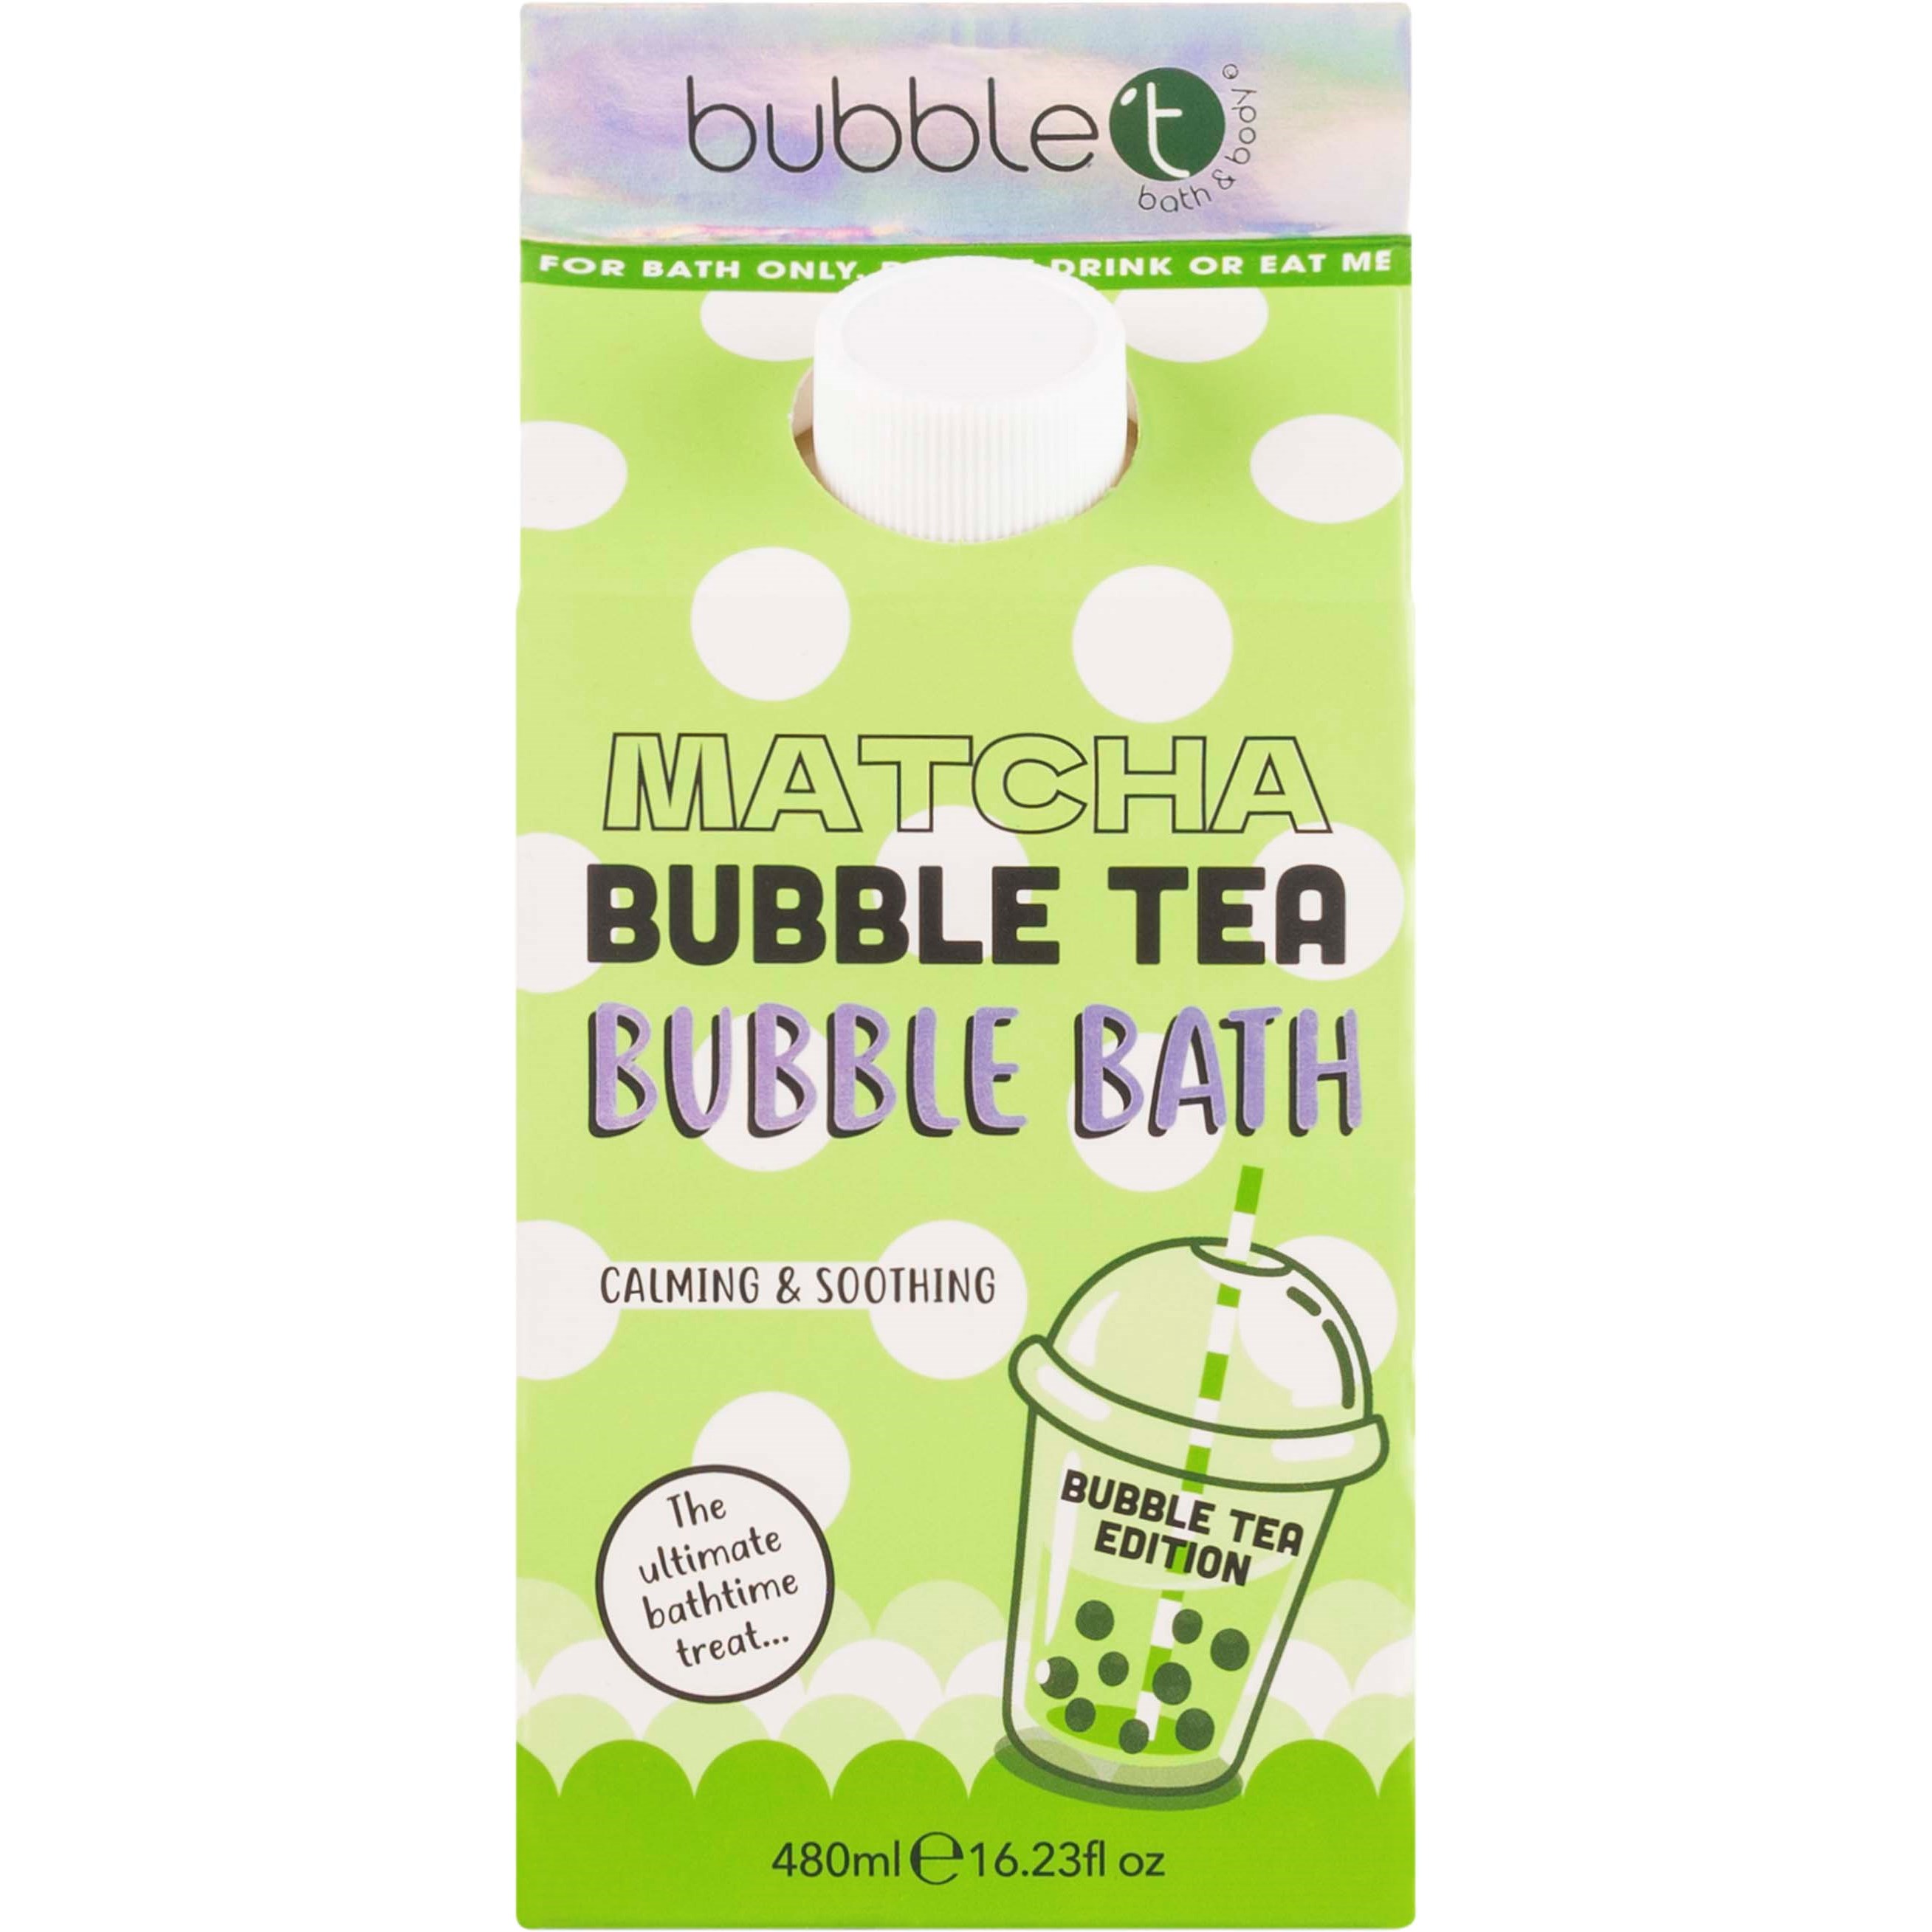 Bilde av Bubblet Bubble Tea Bubble Bath Matcha